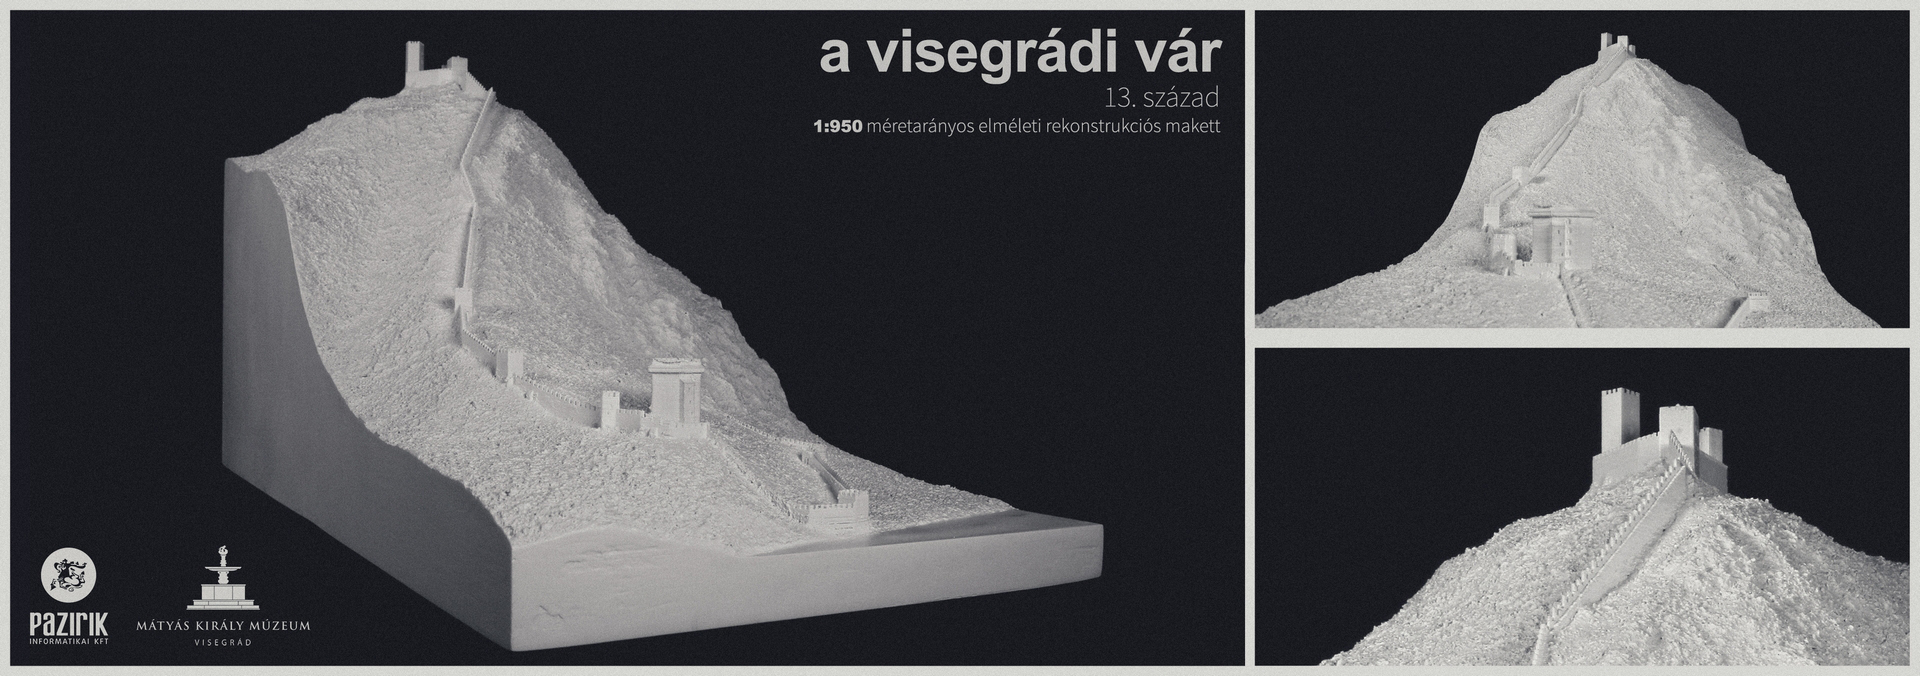 Visegrádi vár a 14. században – elméleti rekonstrukciós makett